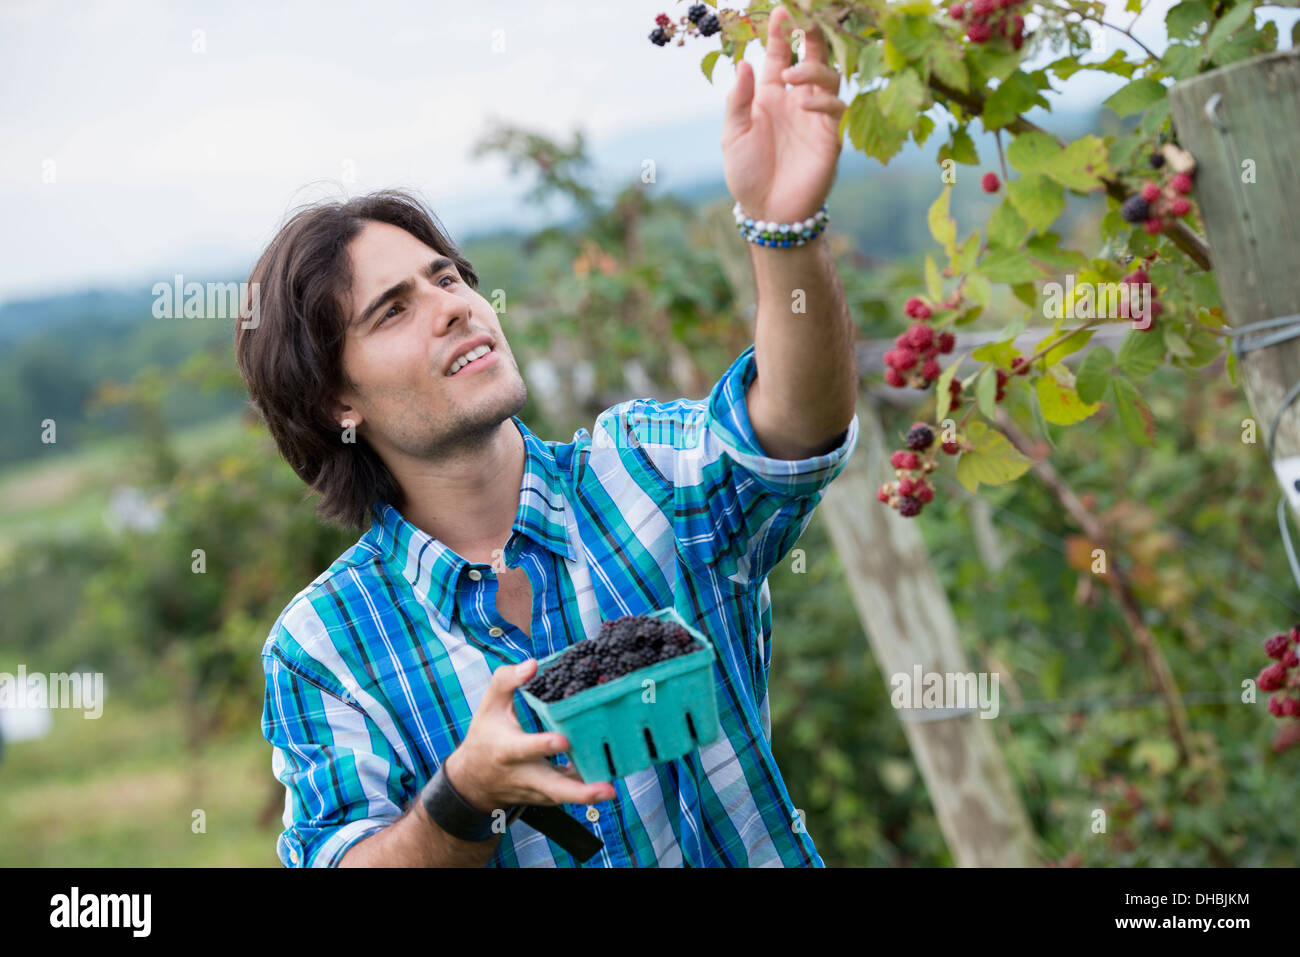 Ein junger Mann, wenn man auf einem Bio-Obst-Bauernhof Blackberry Früchte pflückt. Stockfoto